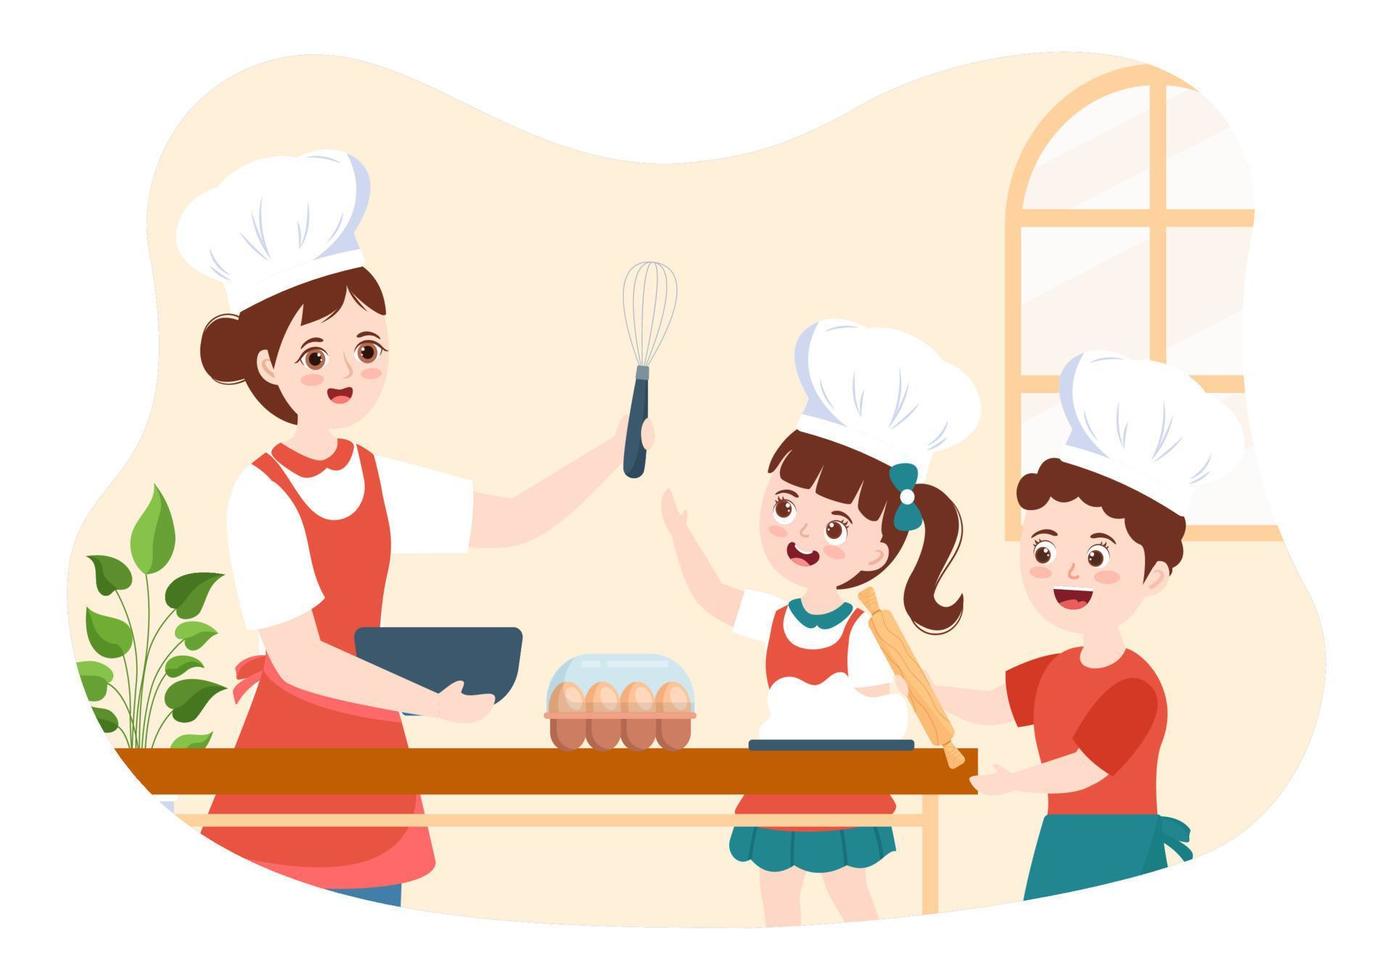 école de cuisine avec des enfants et un enseignant dans une classe apprenant à apprendre cuisine des plats faits maison sur une illustration de modèles dessinés à la main de dessin animé plat vecteur